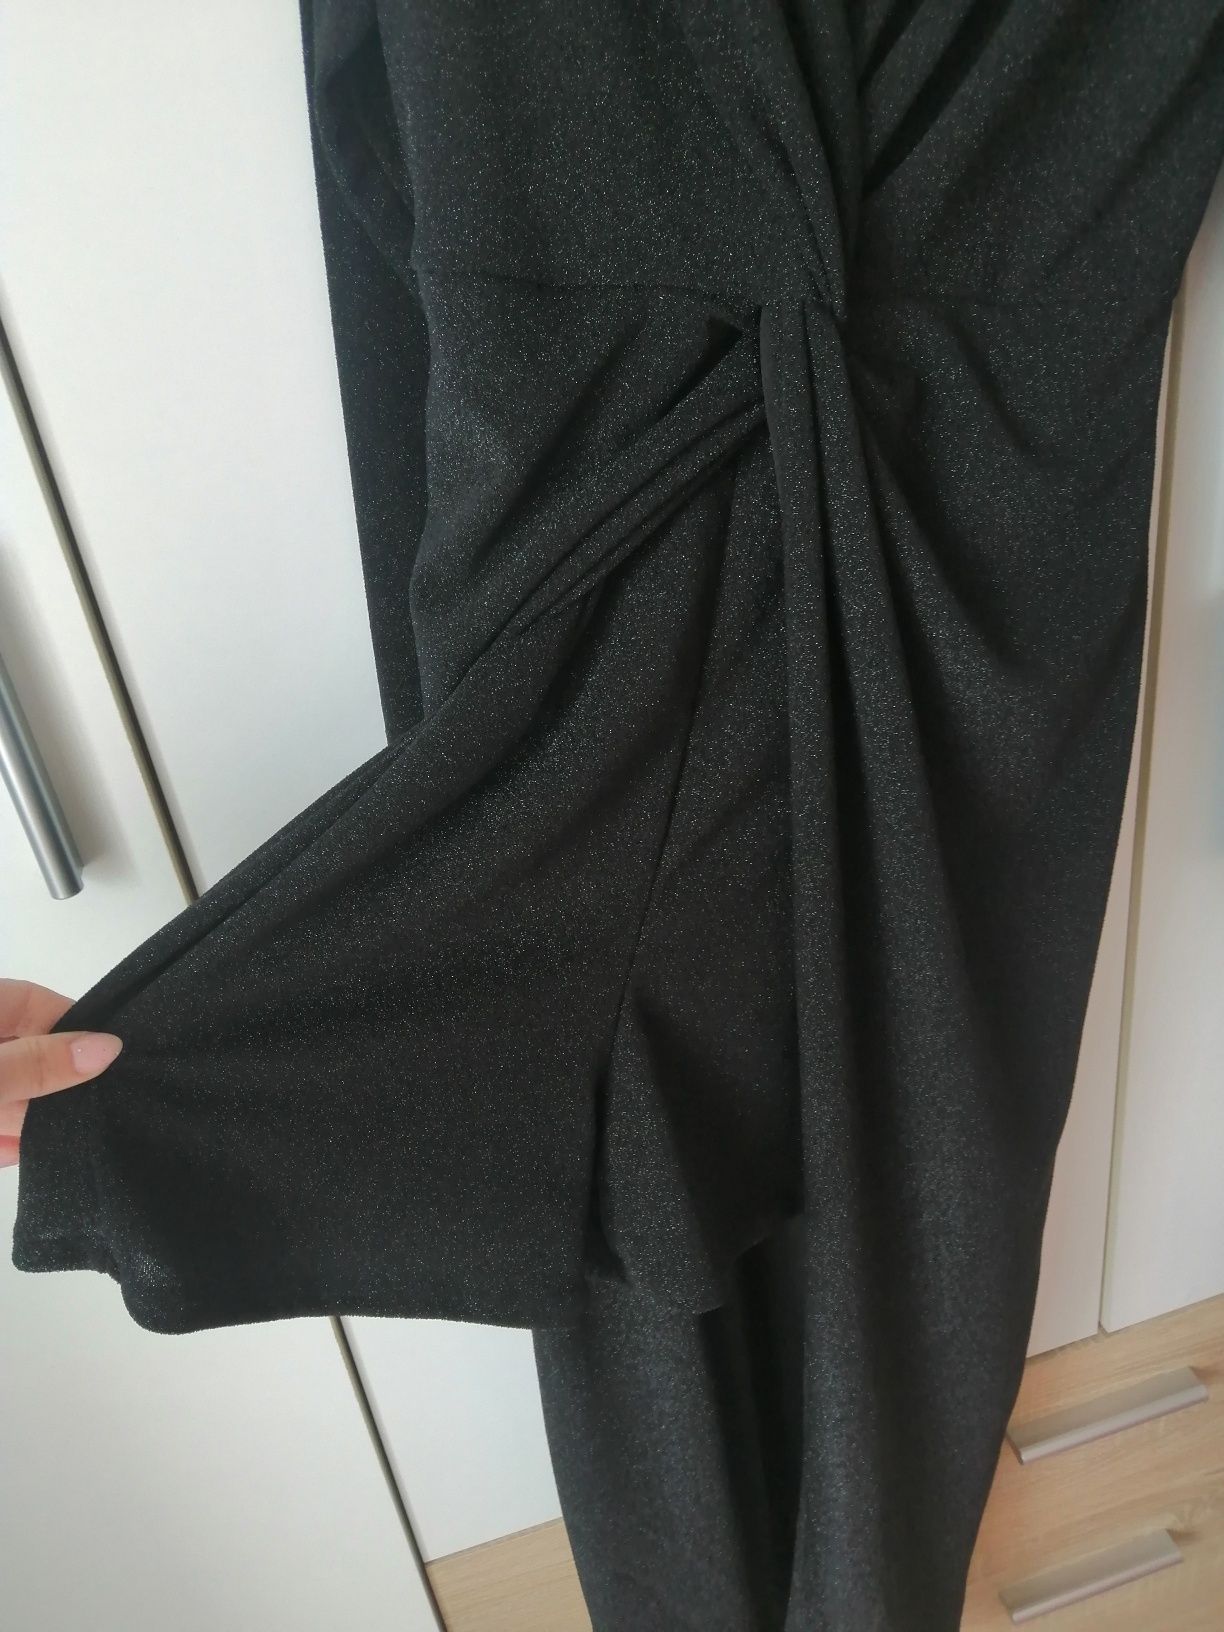 Spódnicospodnie, kombinezon, sukienka ze spodenkami czarna błyszcząca